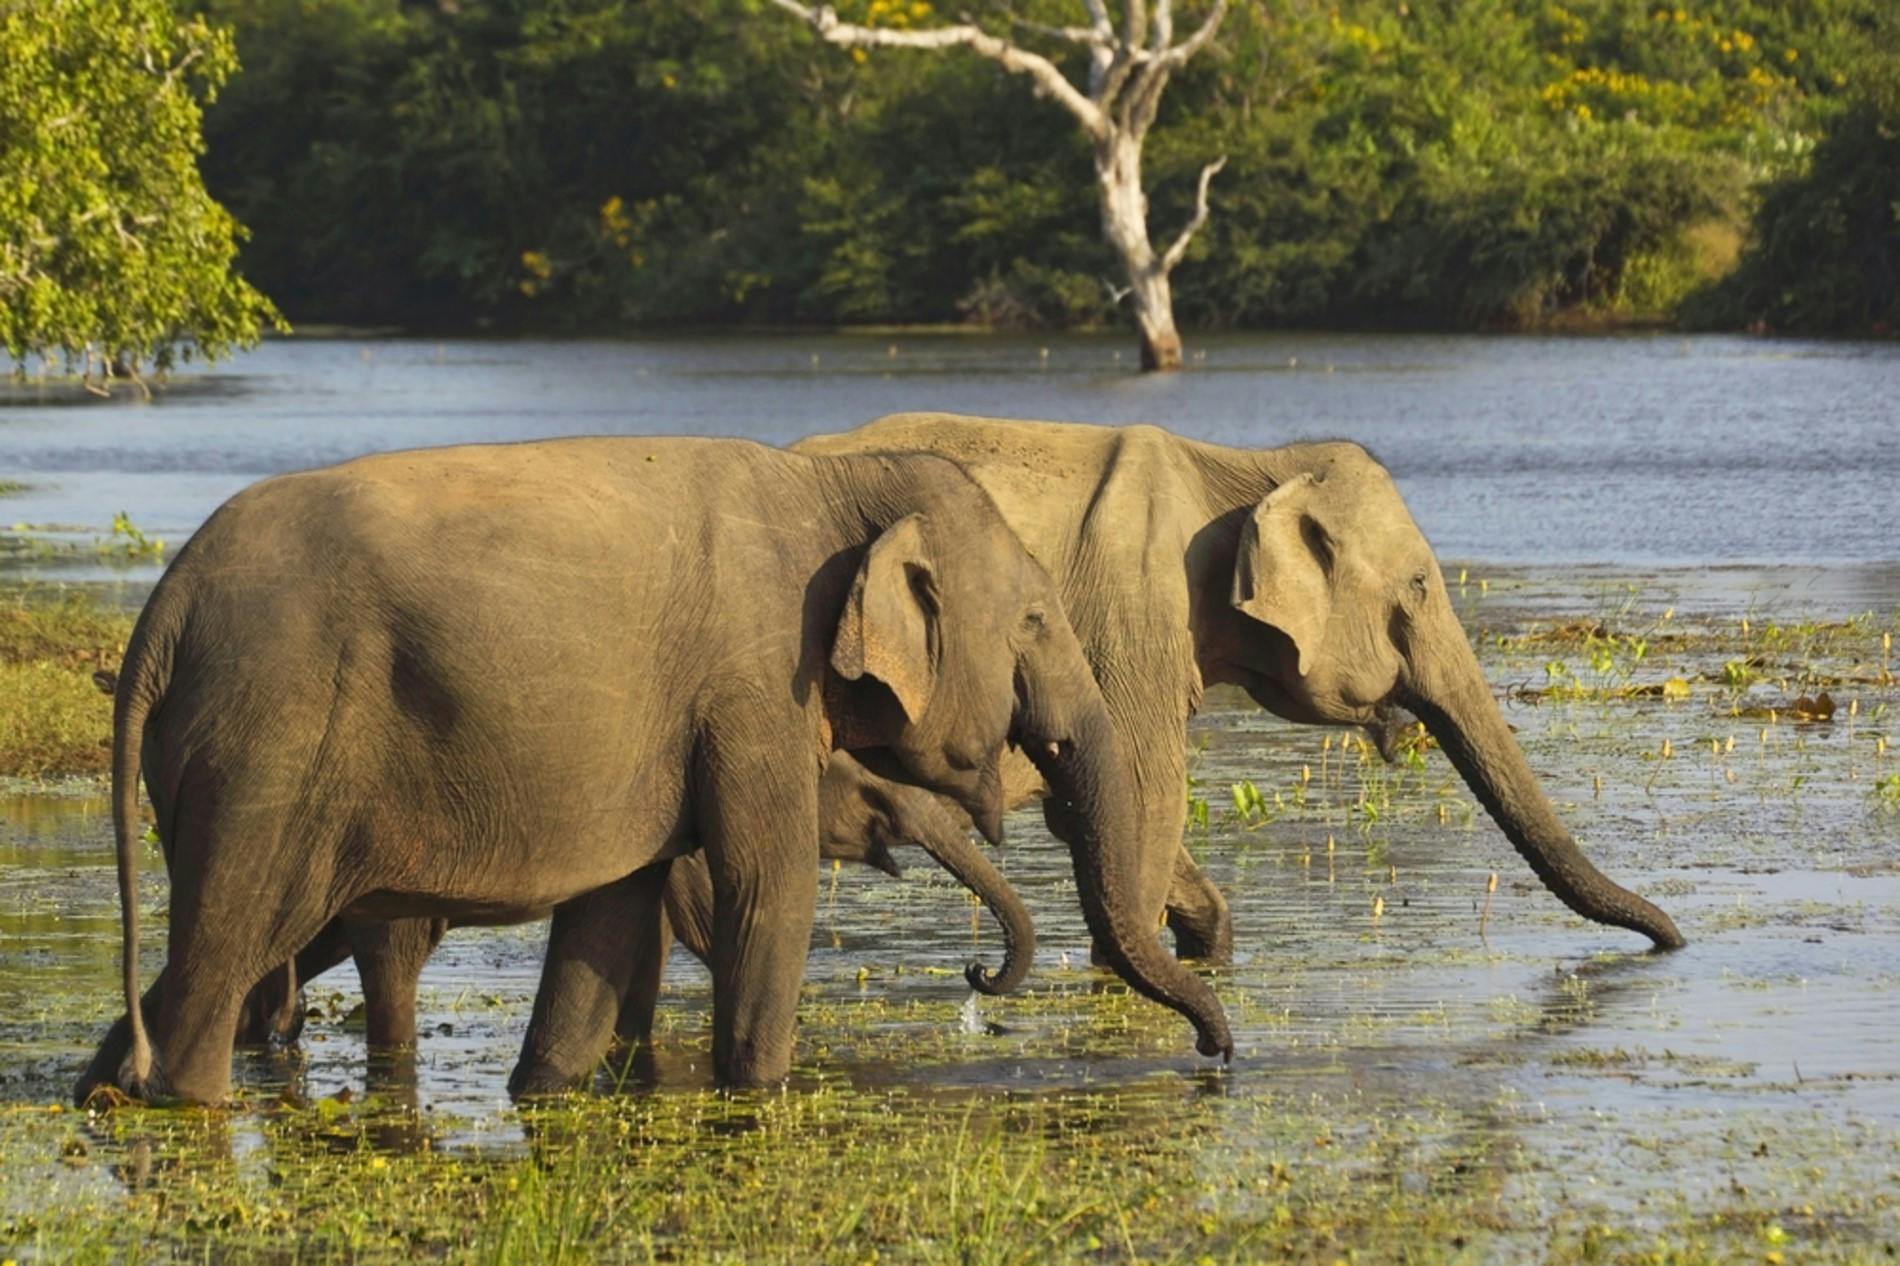 Elephants in the water in Sri Lanka